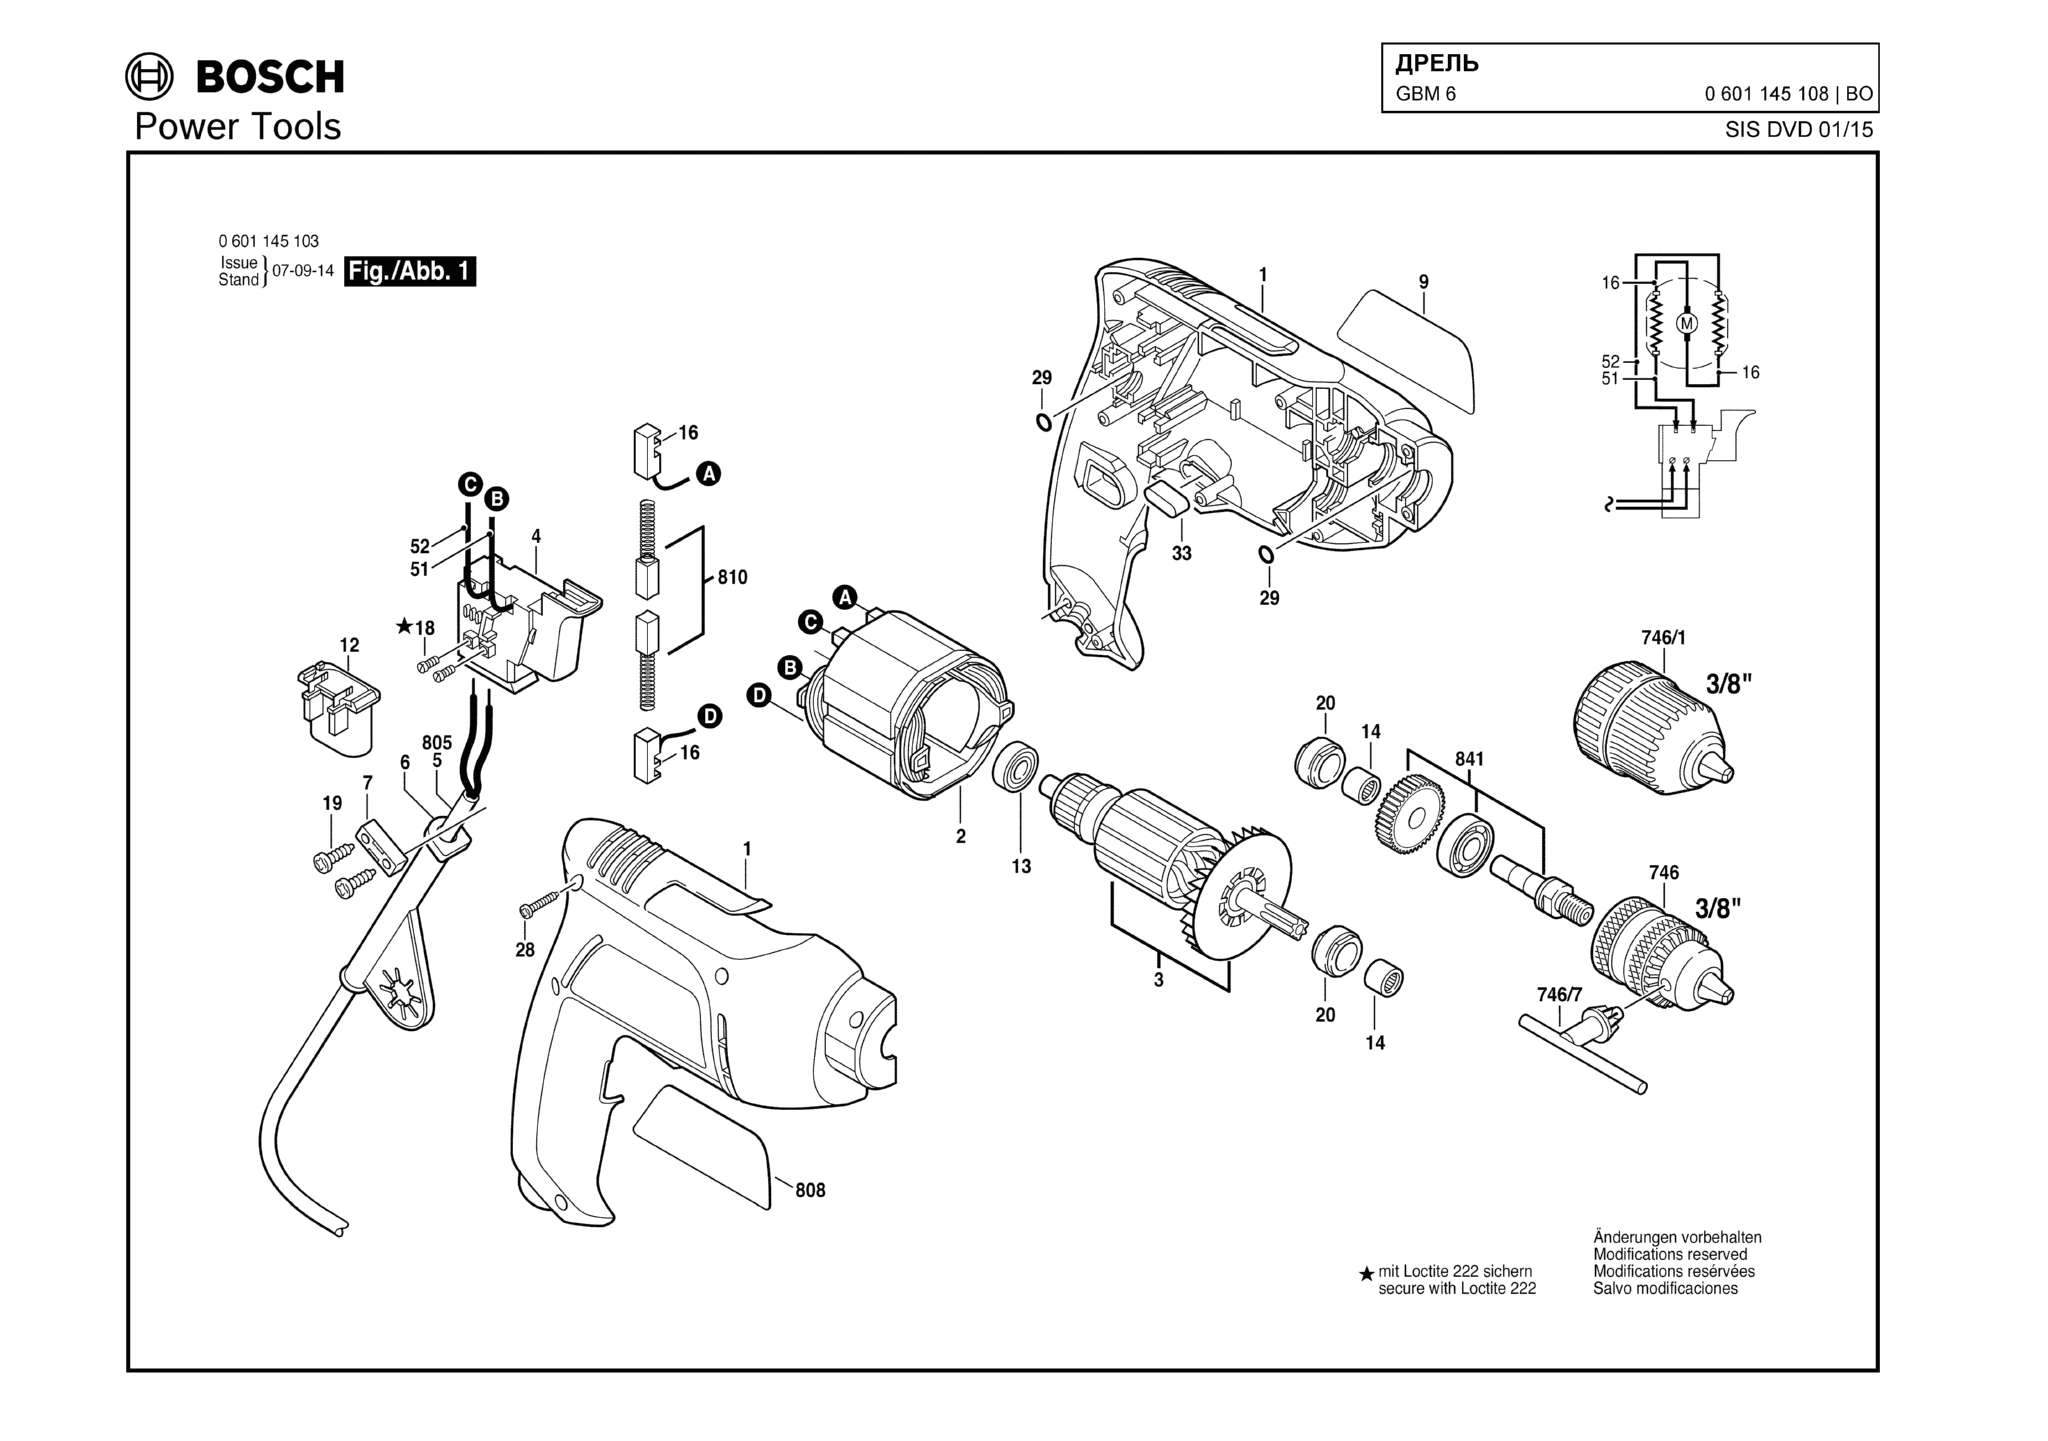 Запчасти, схема и деталировка Bosch GBM 6 (ТИП 0601145108)